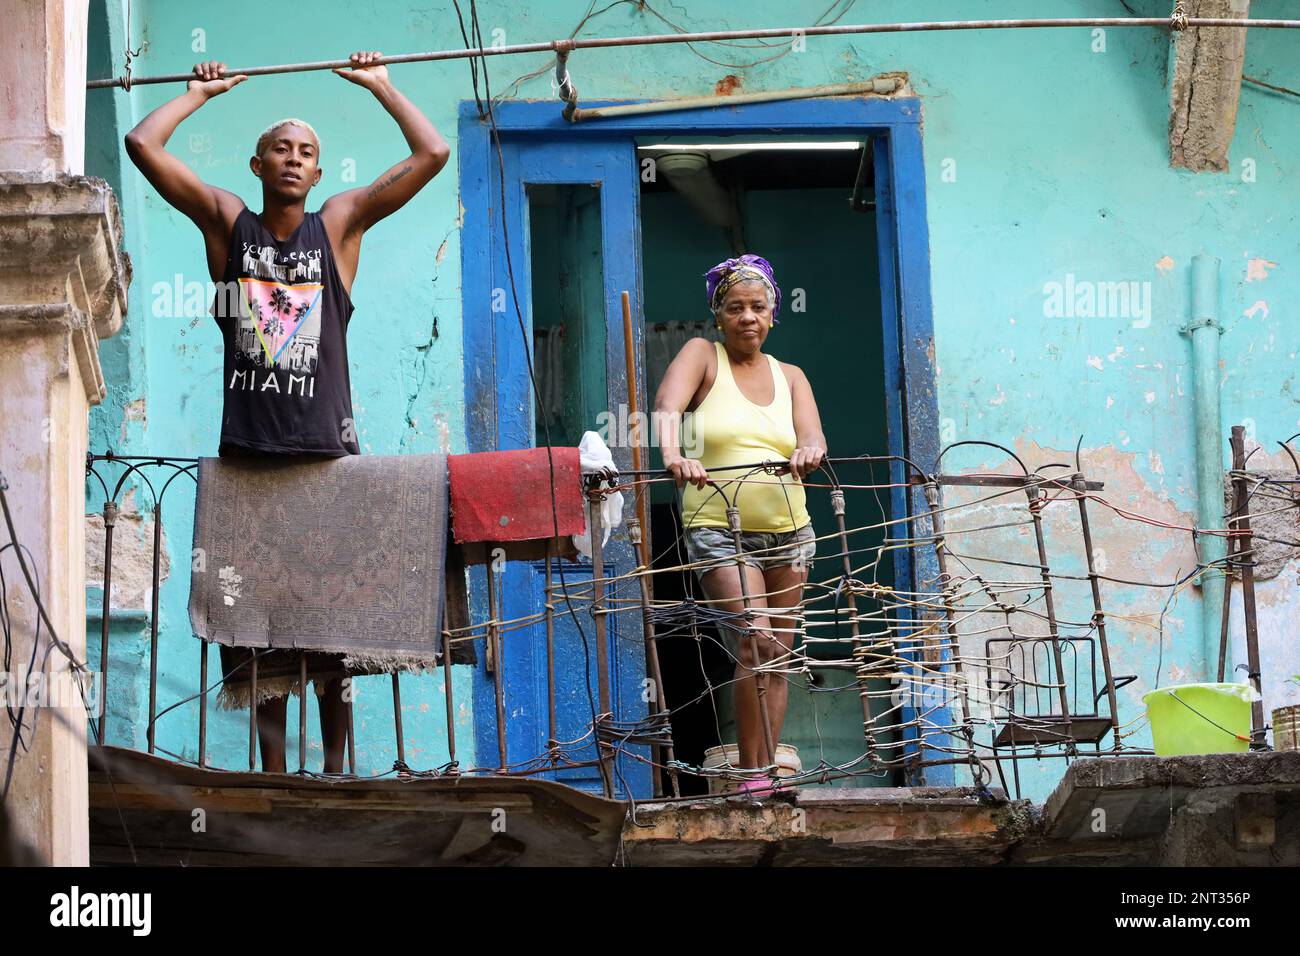 Habitants de taudis dans le centre de la vieille Havane. Un homme noir et une vieille femme sont debout sur le balcon d'une maison en ruine Banque D'Images